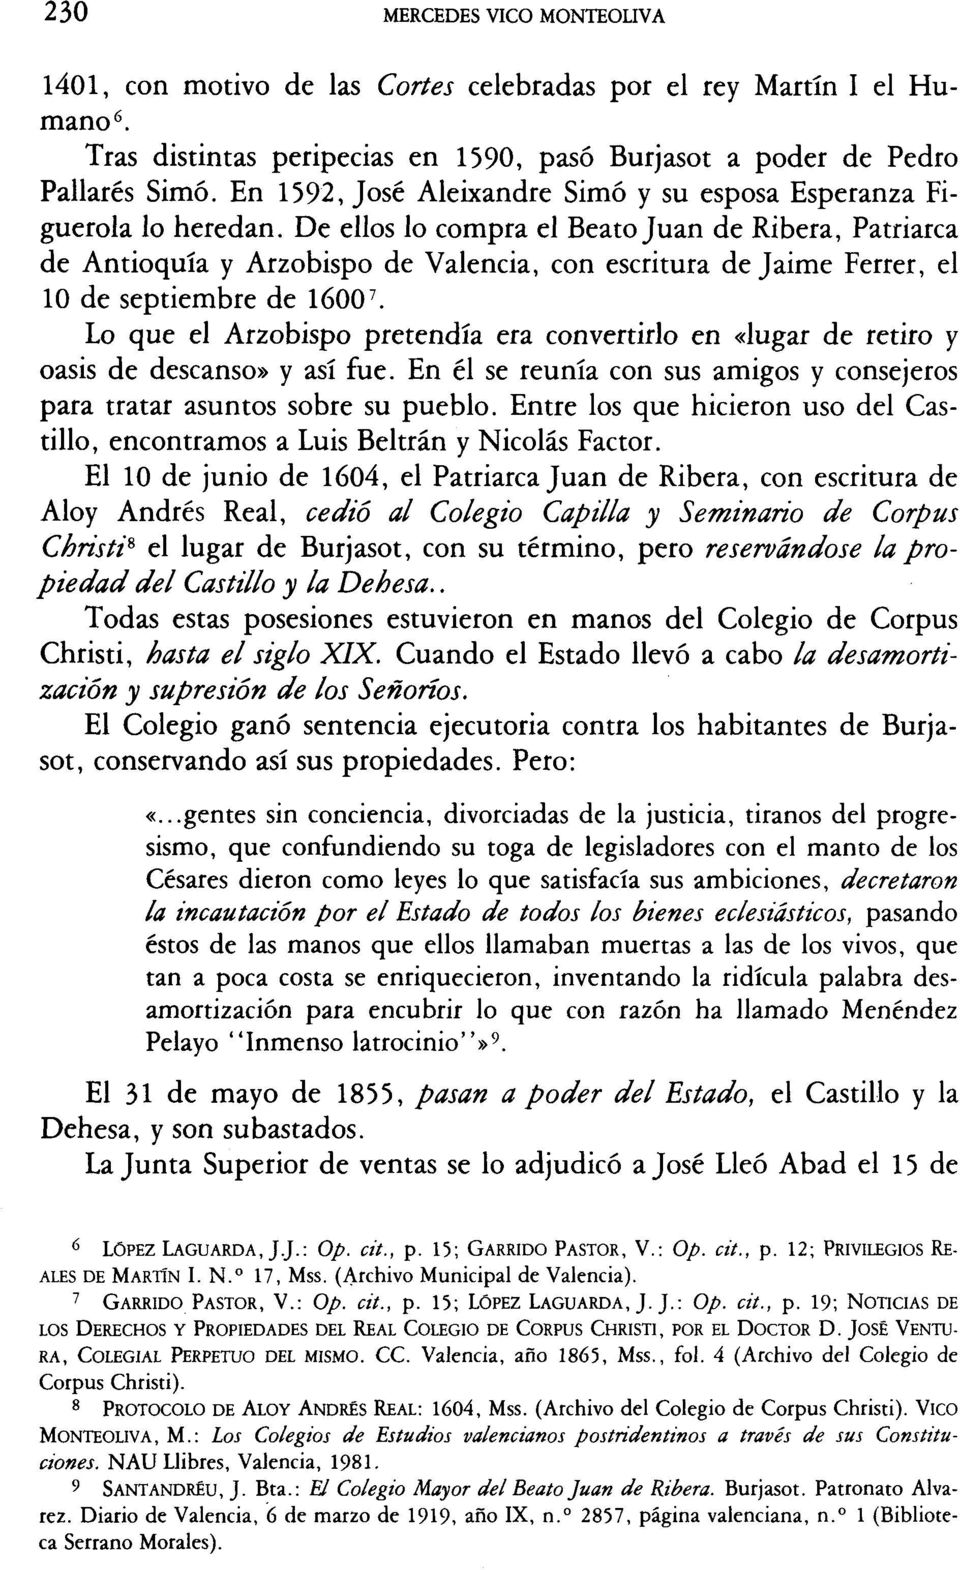 De ellos lo compra el Beato Juan de Ribera, Patriarca de Antioquía y Arzobispo de Valencia, con escritura de Jaime Ferrer, el 10 de septiembre de 1600 7.